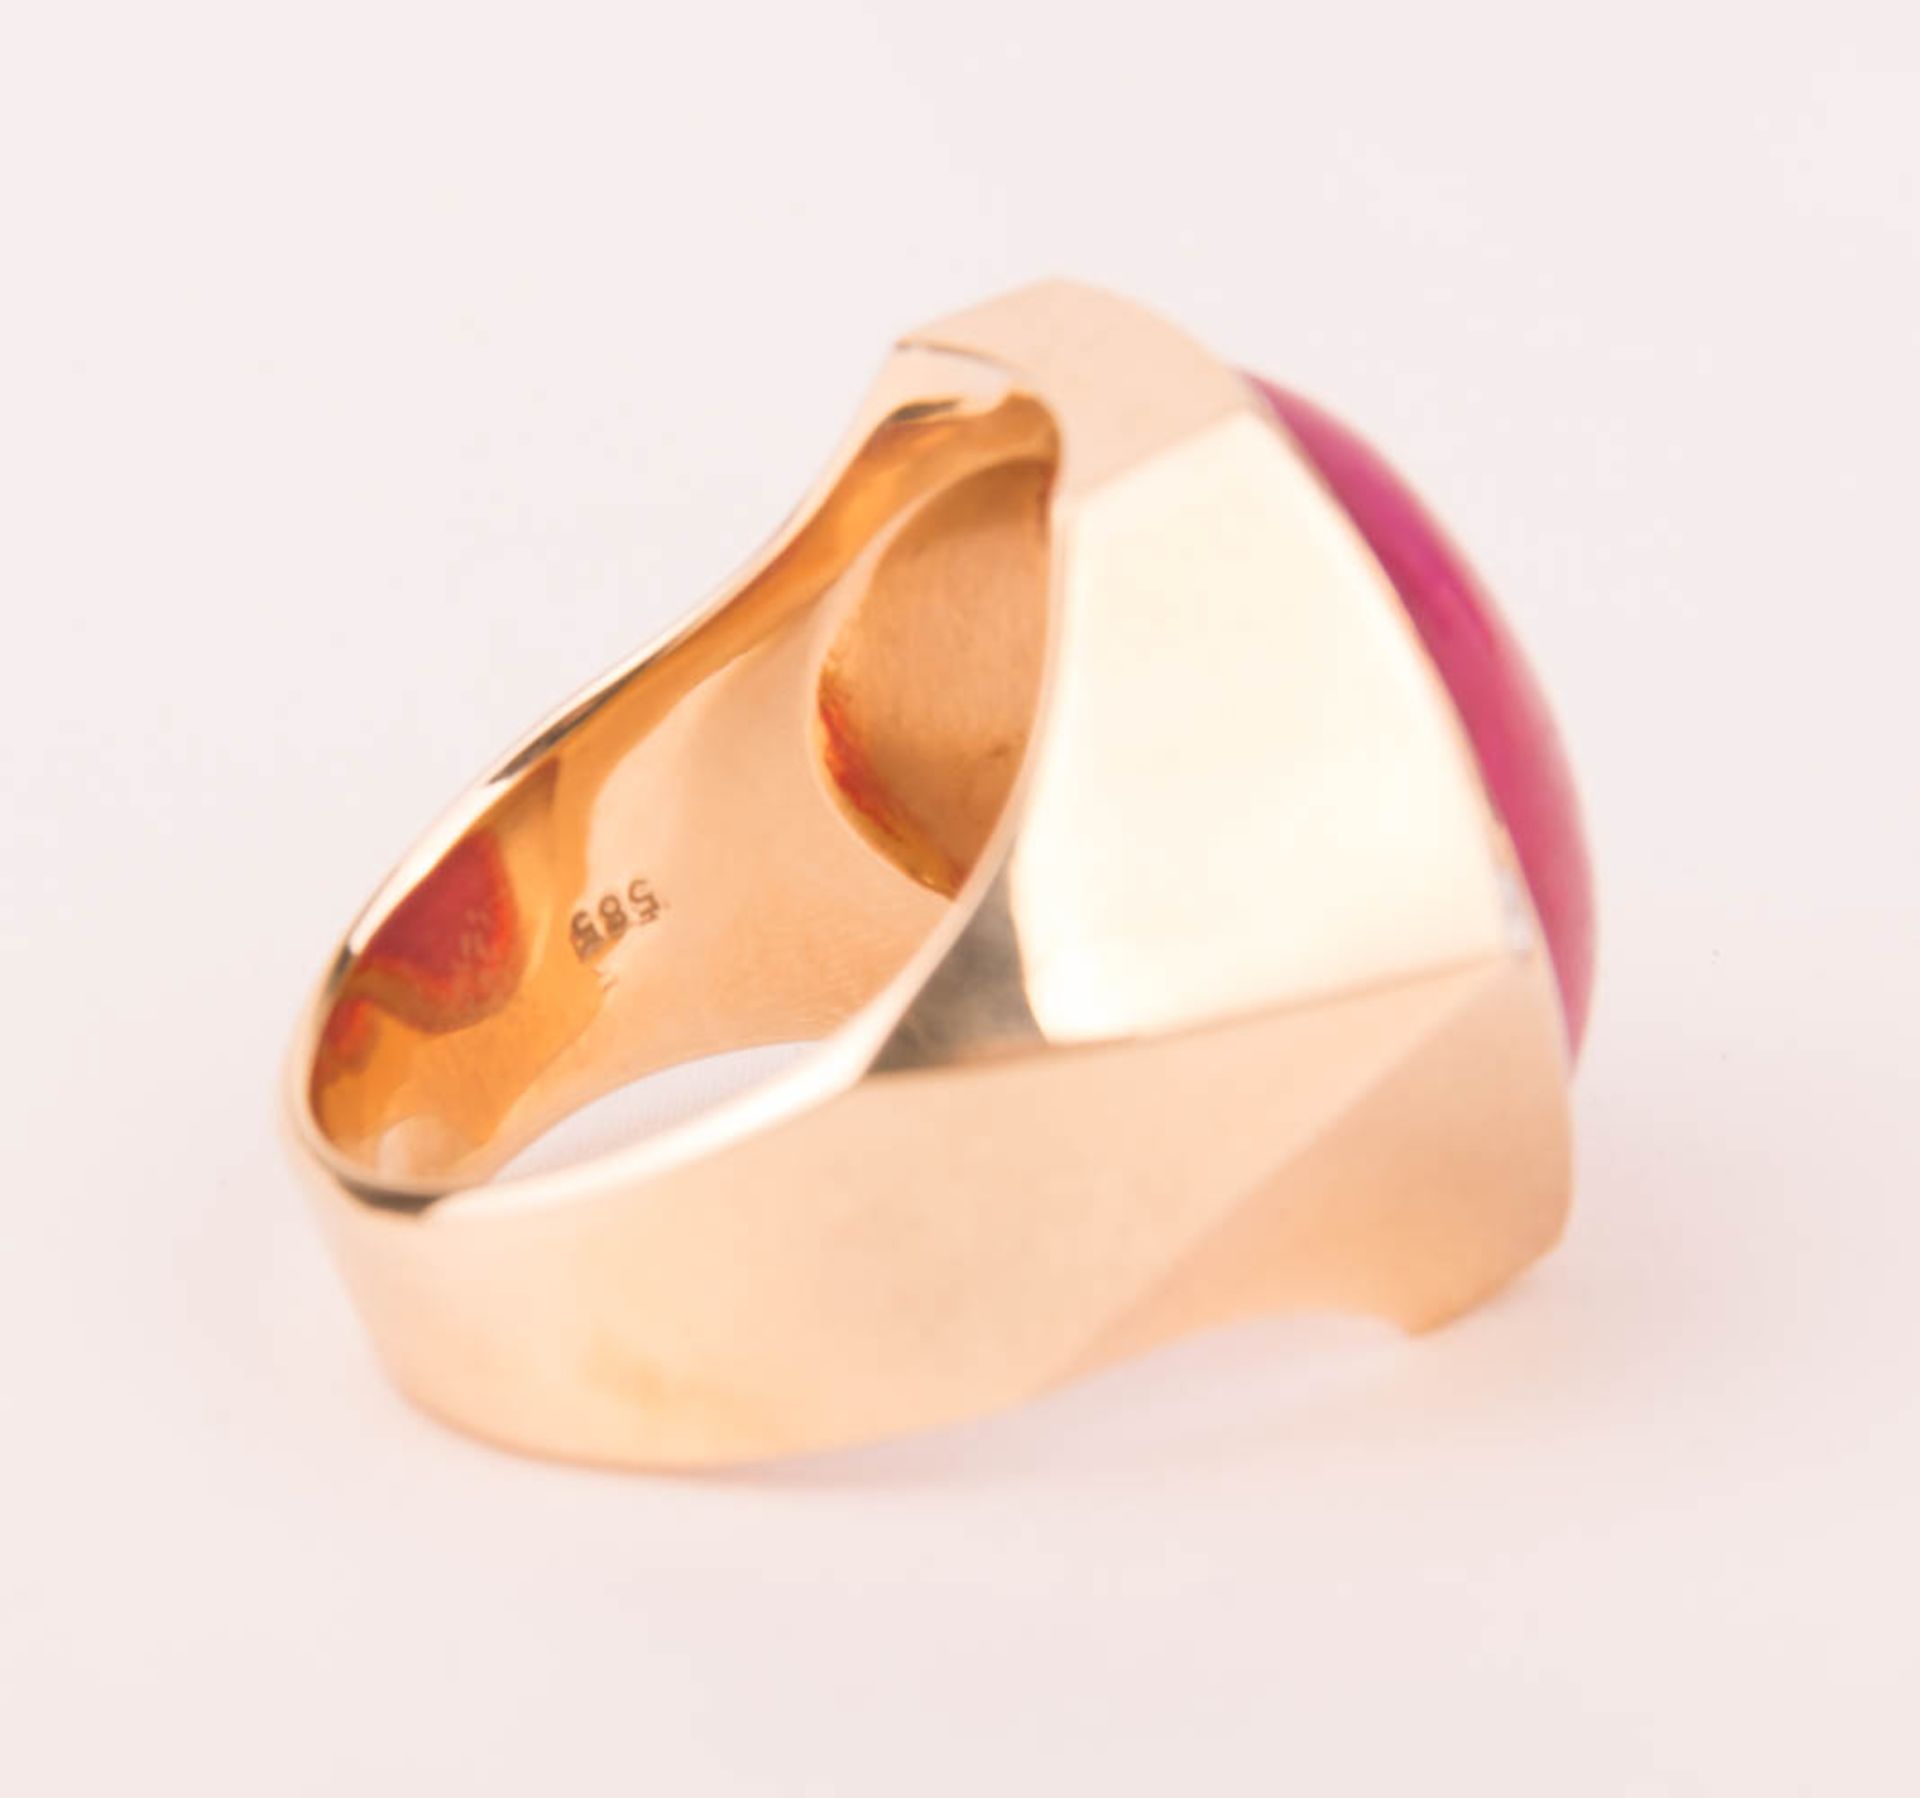 Beeindruckend breiter Ring mit großem Rubin und Diamanten, 585er Gelbgold. - Bild 5 aus 5